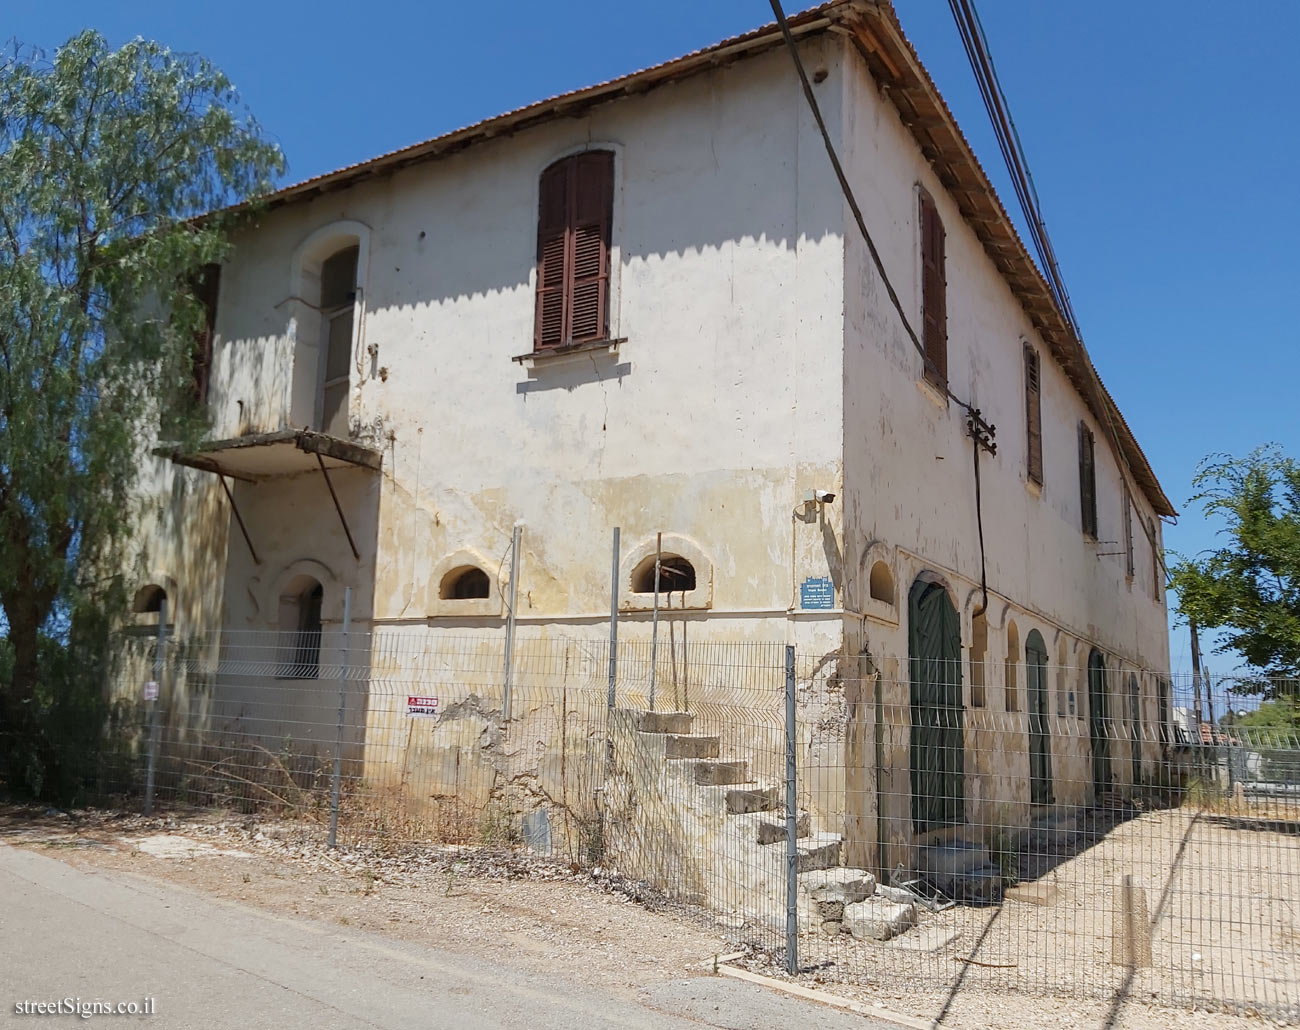 Mikve Israel - Heritage Sites in Israel - Ware house - Sderot Krause 12, Israel